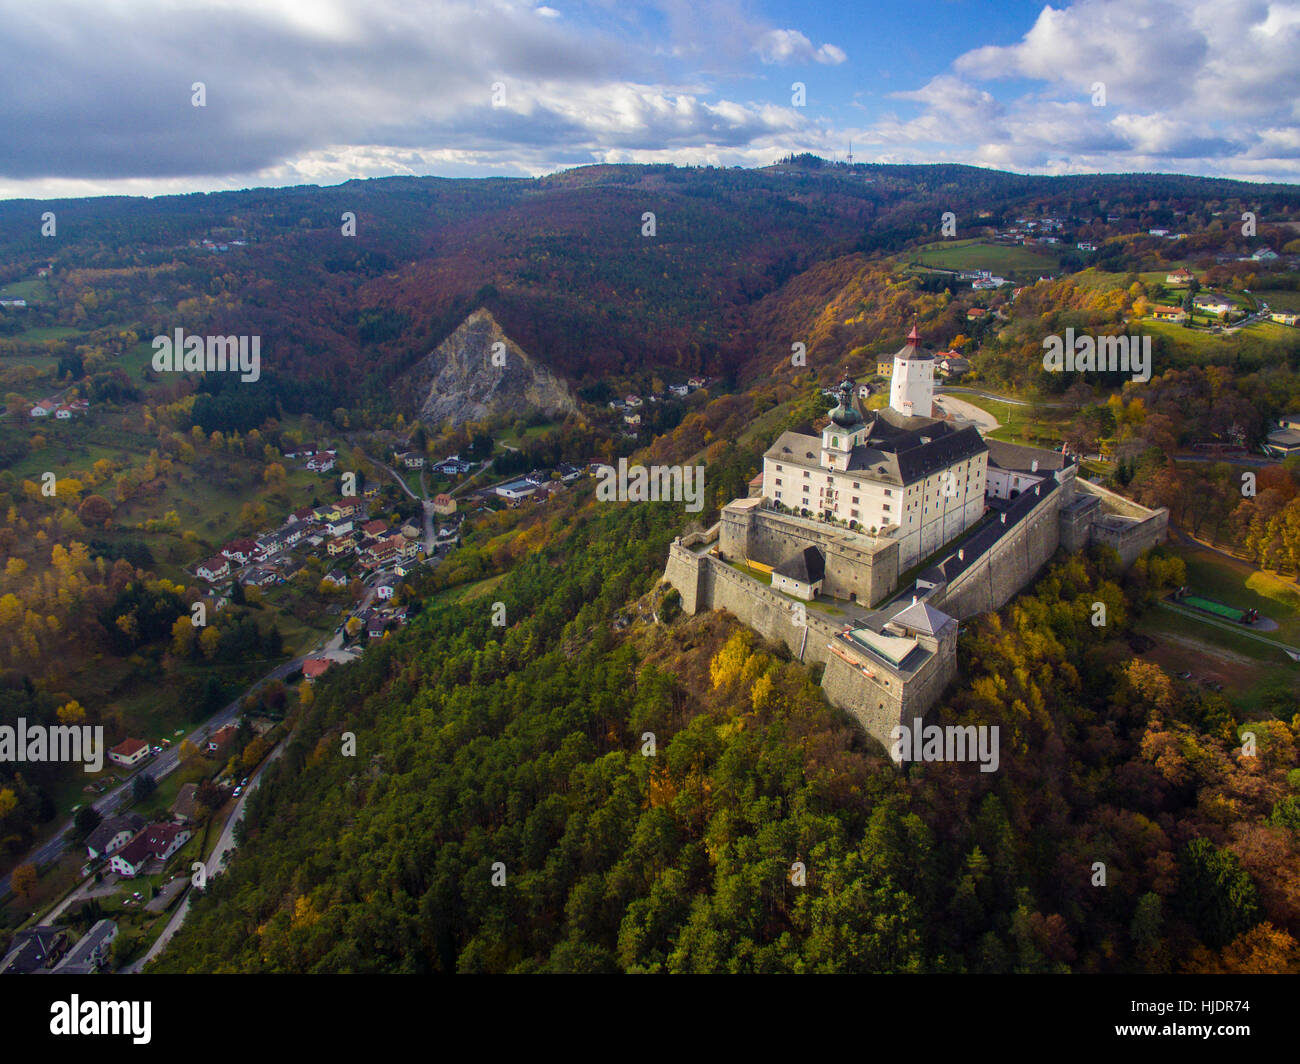 Aerial view of Forchtenstein castle in Burgenland, Austria Stock Photo